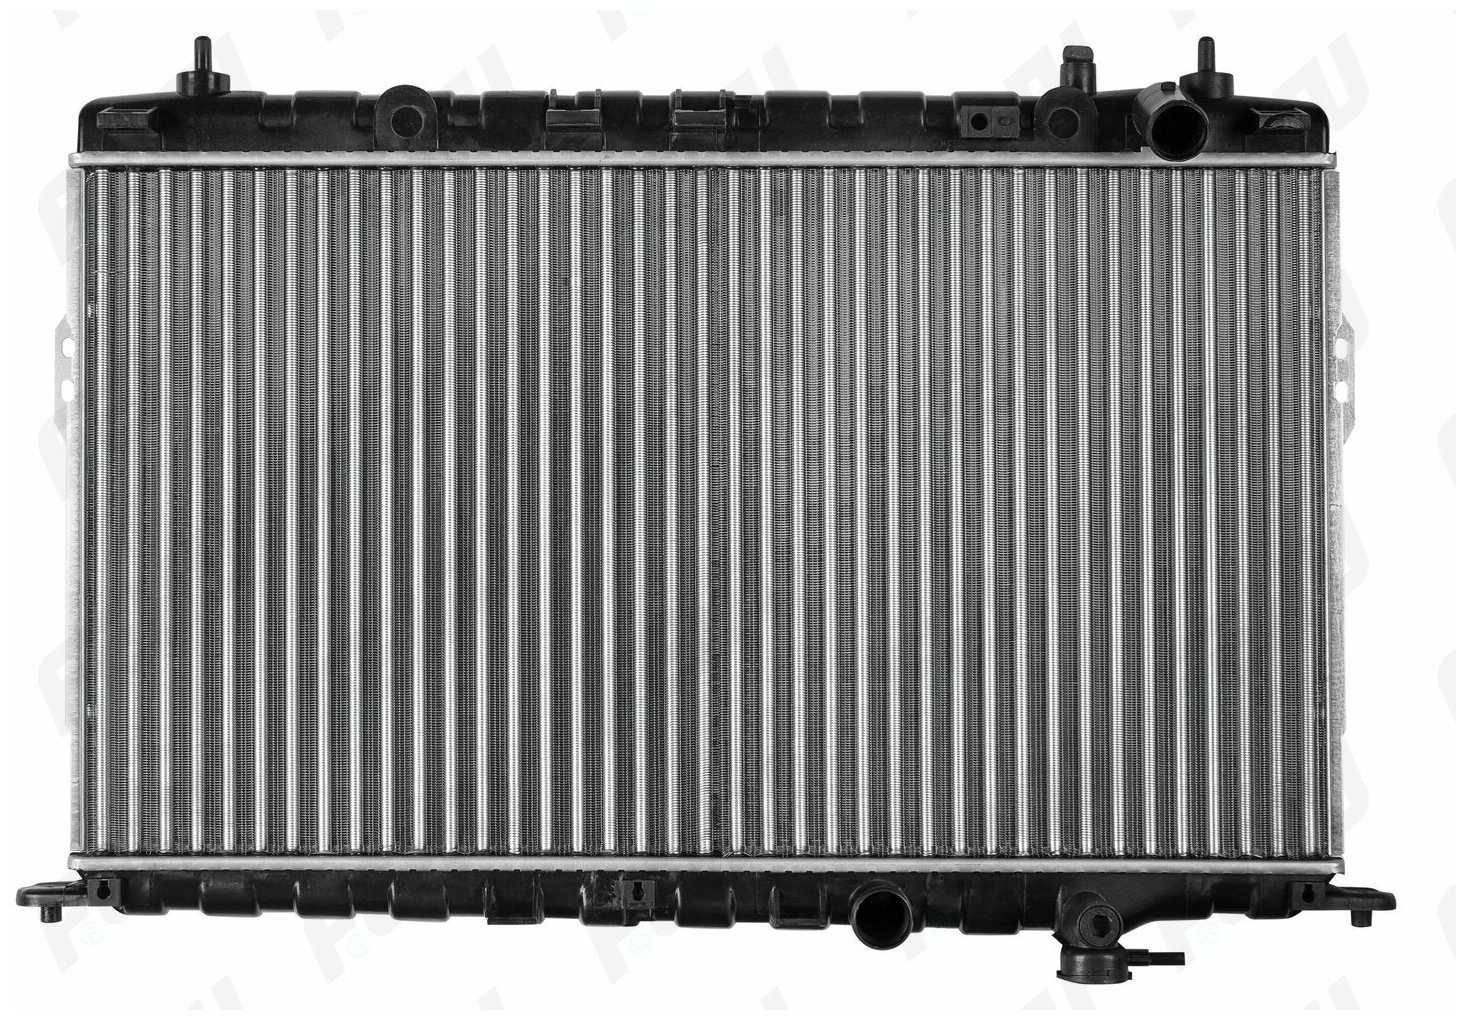 Радиатор Охлаждения (Сборный) Для Hyundai Sonata (98-) 2.0/2.4/2.5/2.7 Mt FEHU арт. frc1405m